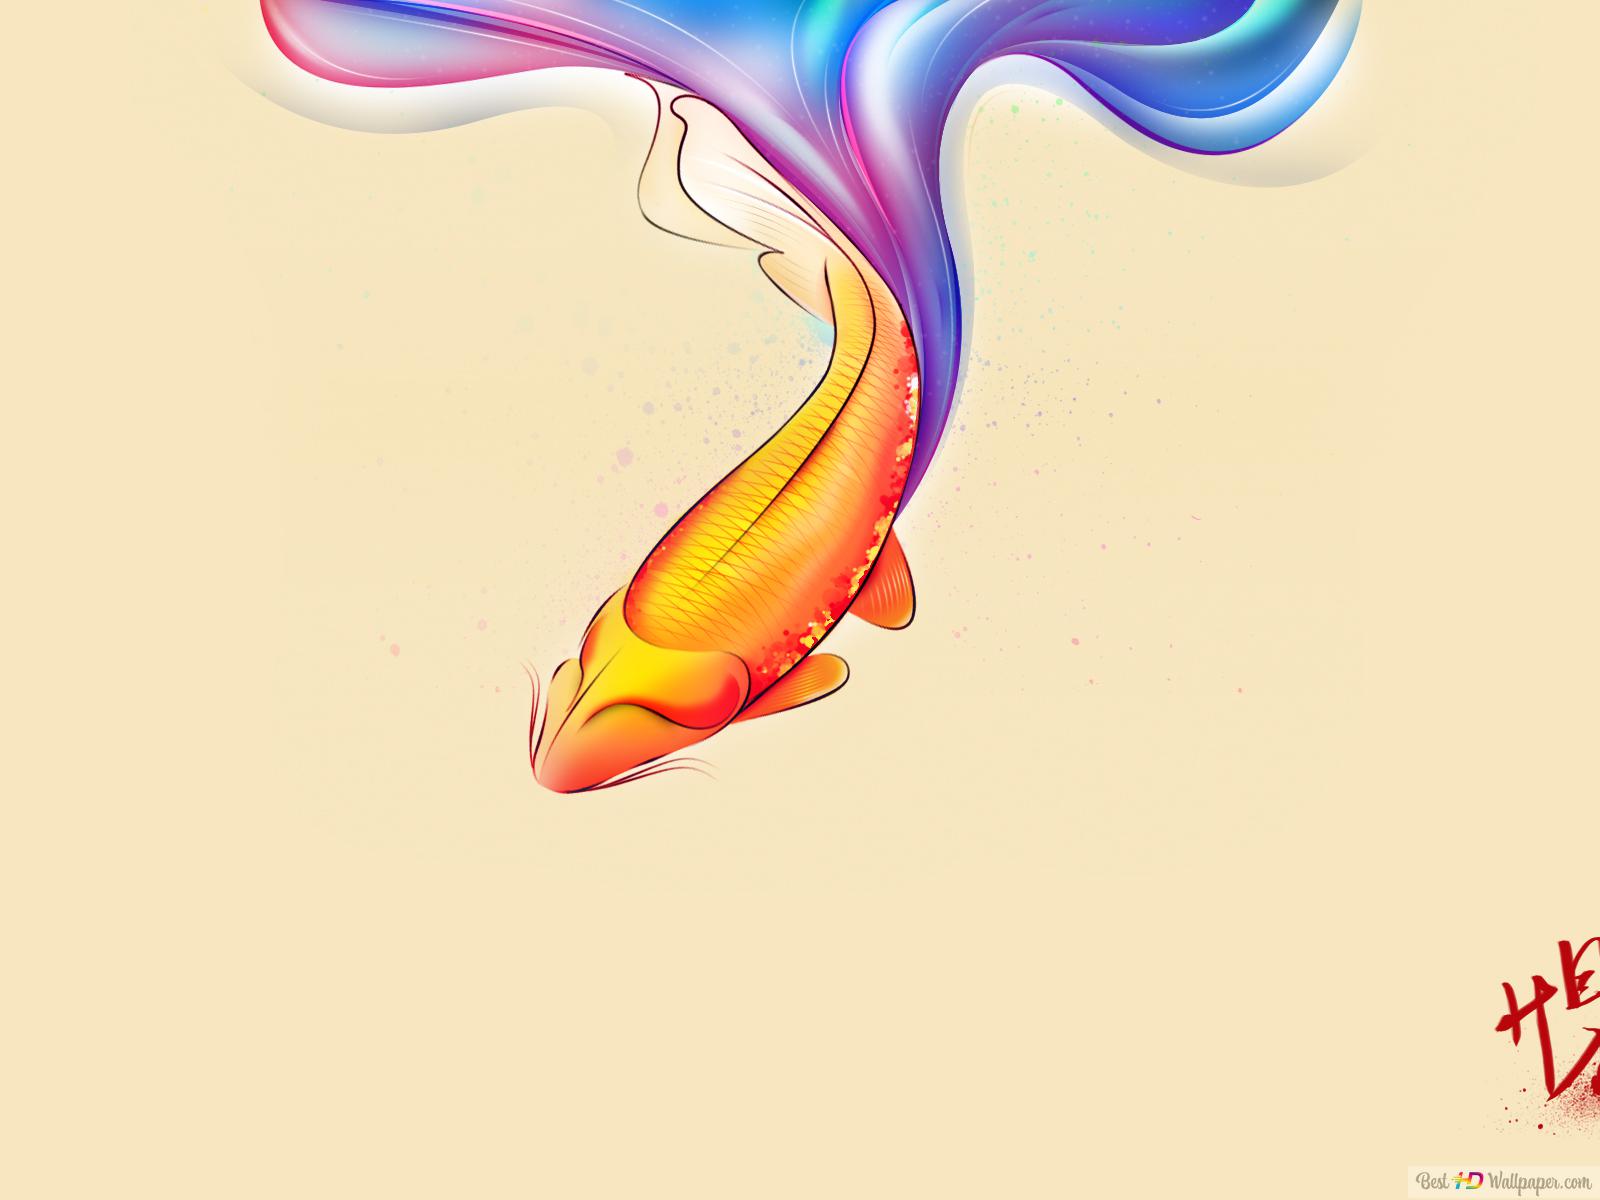 Fish wallpaper Vectors & Illustrations for Free Download | Freepik